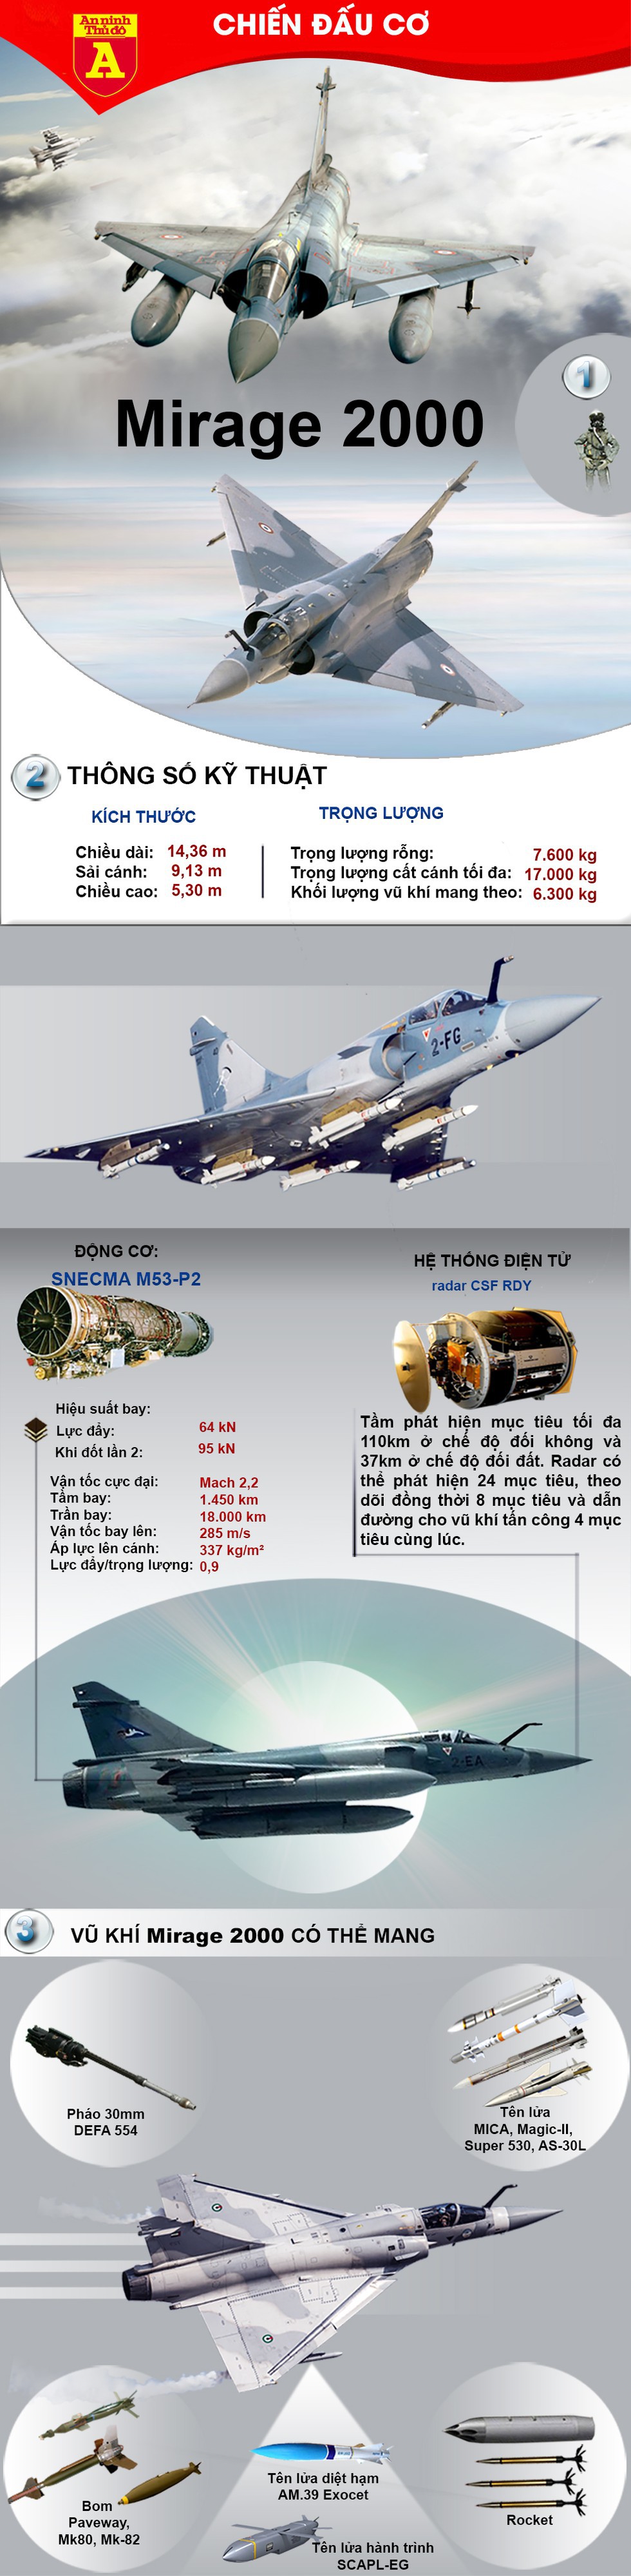 [Infographics] Chiến đấu cơ Hy Lạp khóa mục tiêu chiến hạm Thổ Nhĩ Kỳ - Ảnh 1